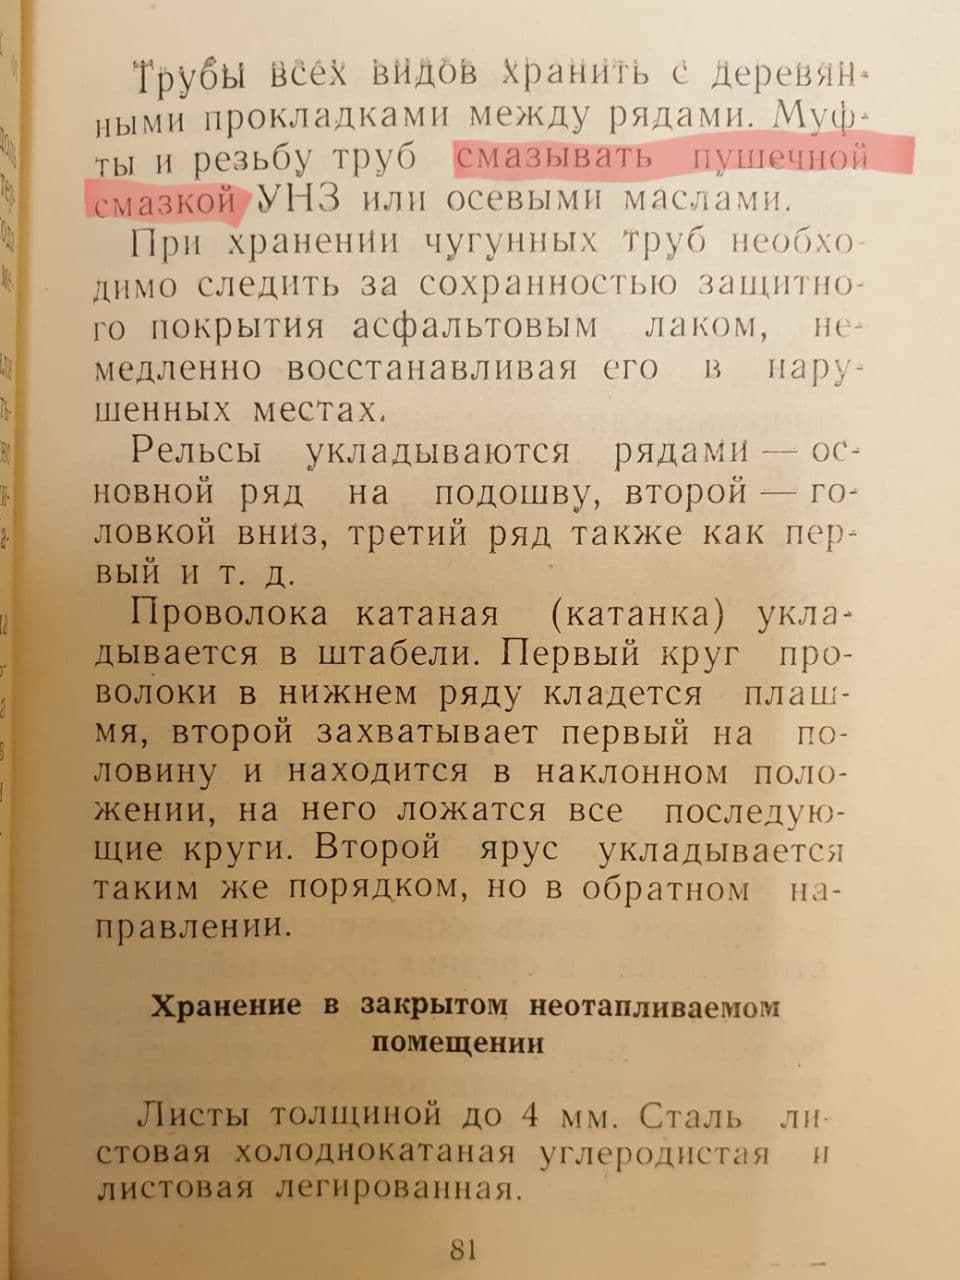 Справочник работников материально-технического снабжения. 1961 г. И. В. Горелов